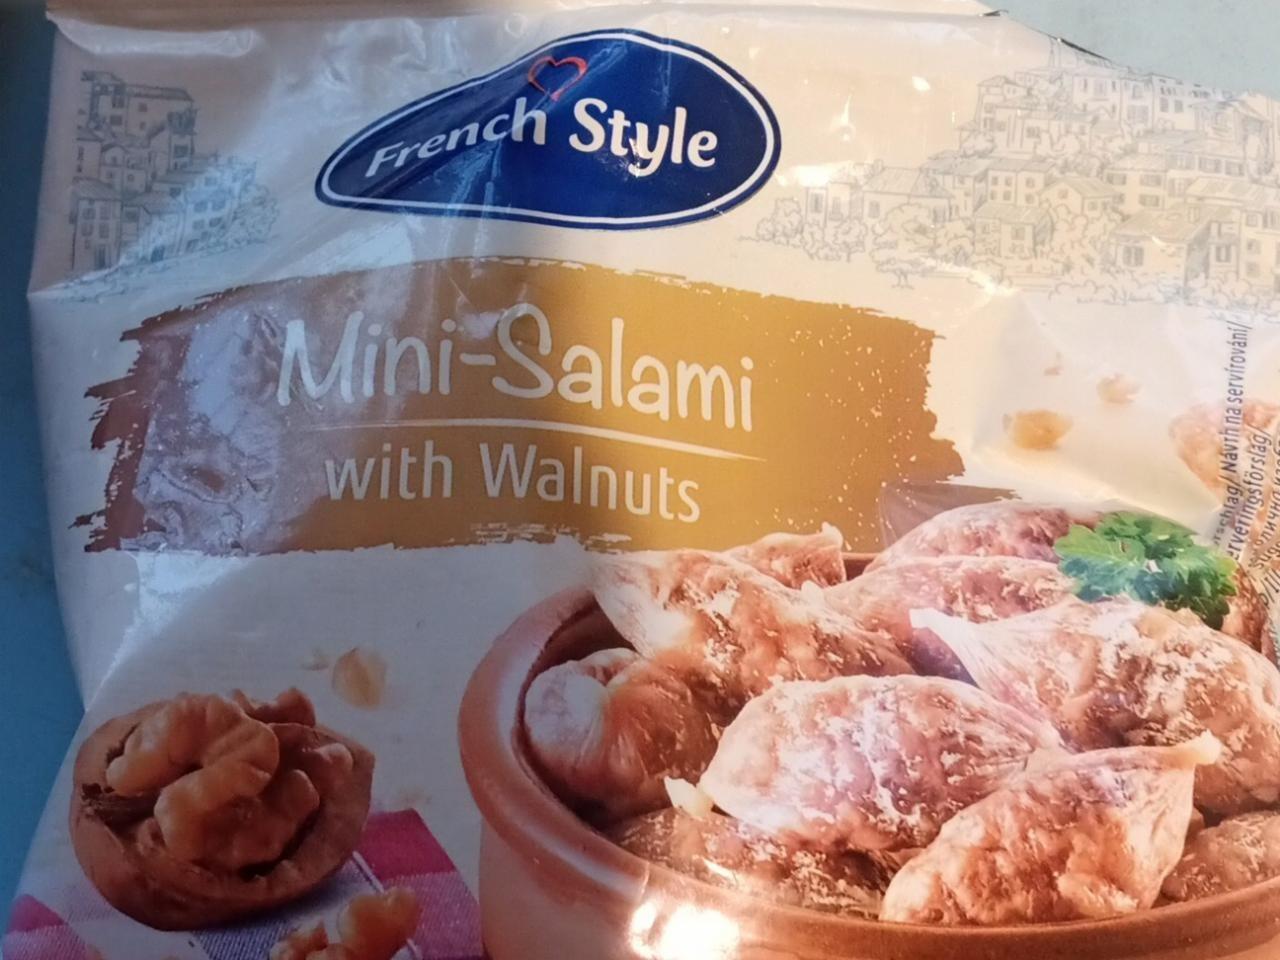 a hodnoty nutriční with style - kalorie, Mini-Salami kJ Walnuts French